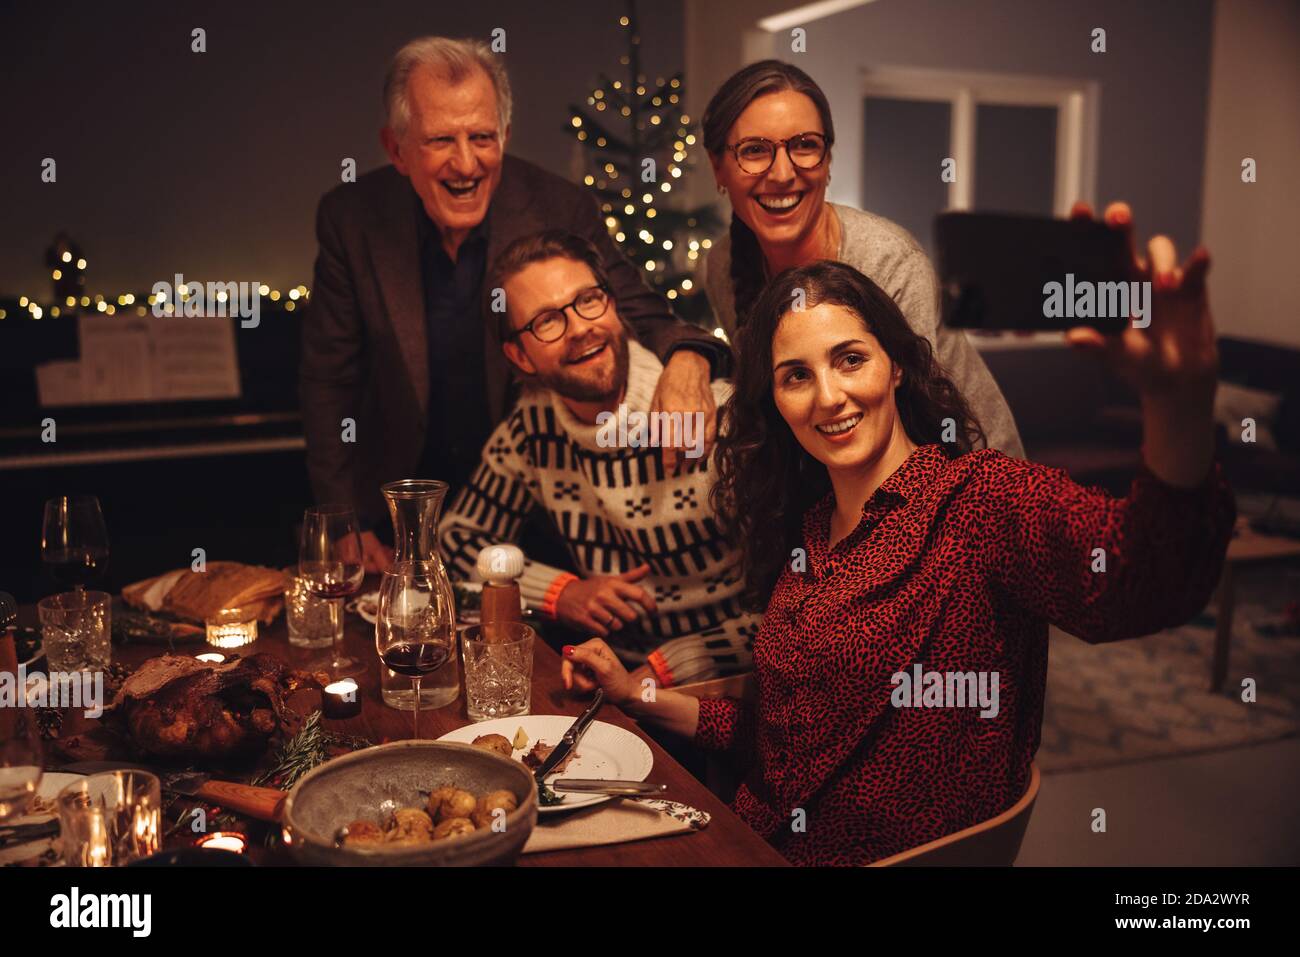 Mujer tomando selfie con la familia durante la cena de acción de gracias. Familia europea tomando selfies en la víspera de Navidad. Foto de stock